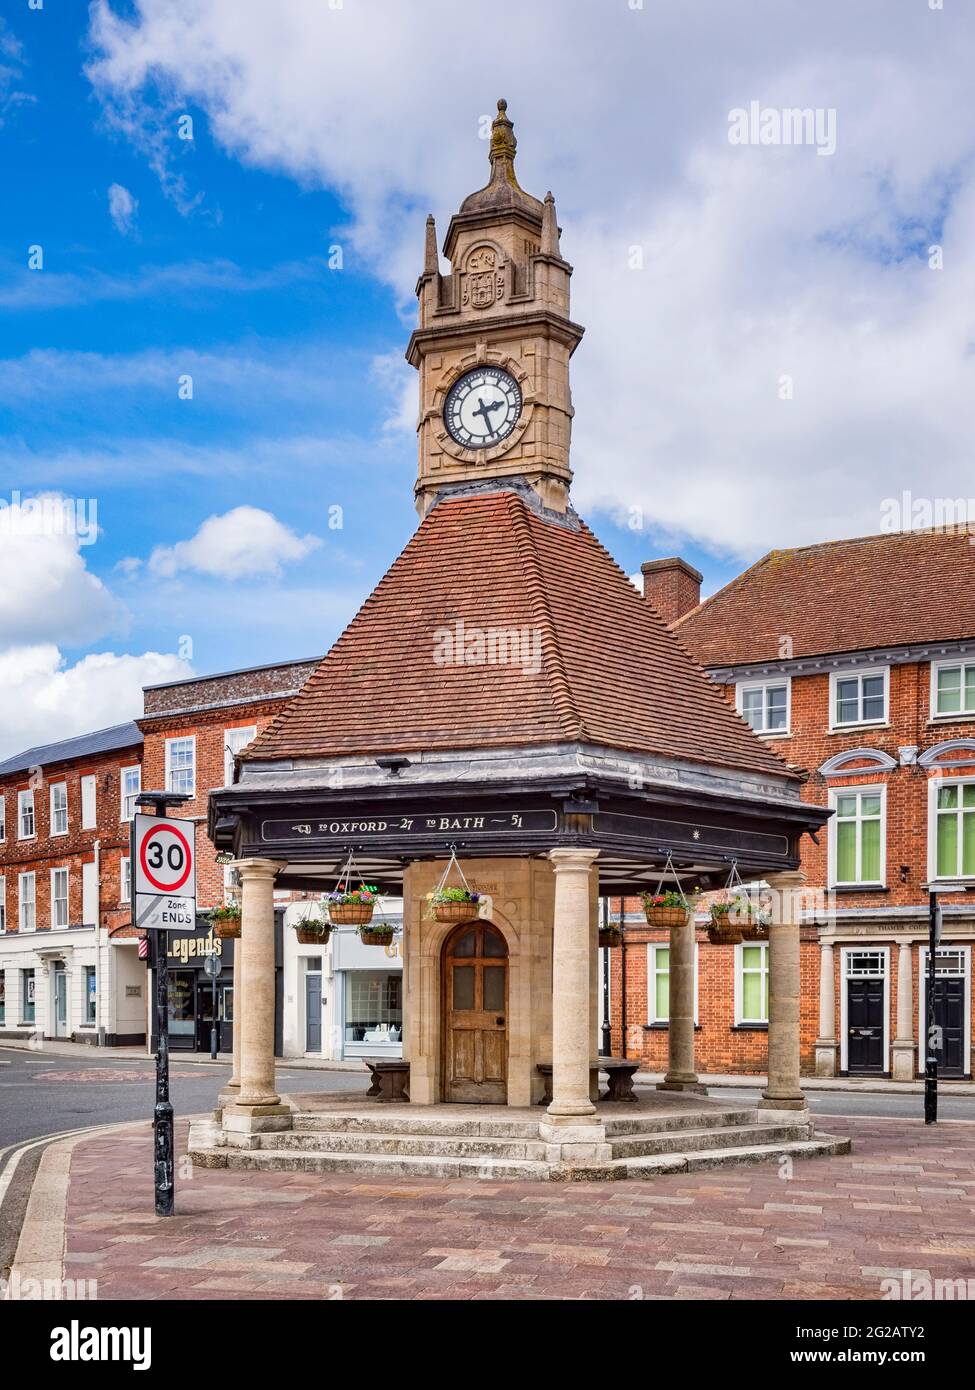 8 juin 2019 : Newbury, Berkshire, Royaume-Uni - La Maison de l'horloge, un tour de l'horloge du 20ème siècle à Newbury, Berkshire. Banque D'Images